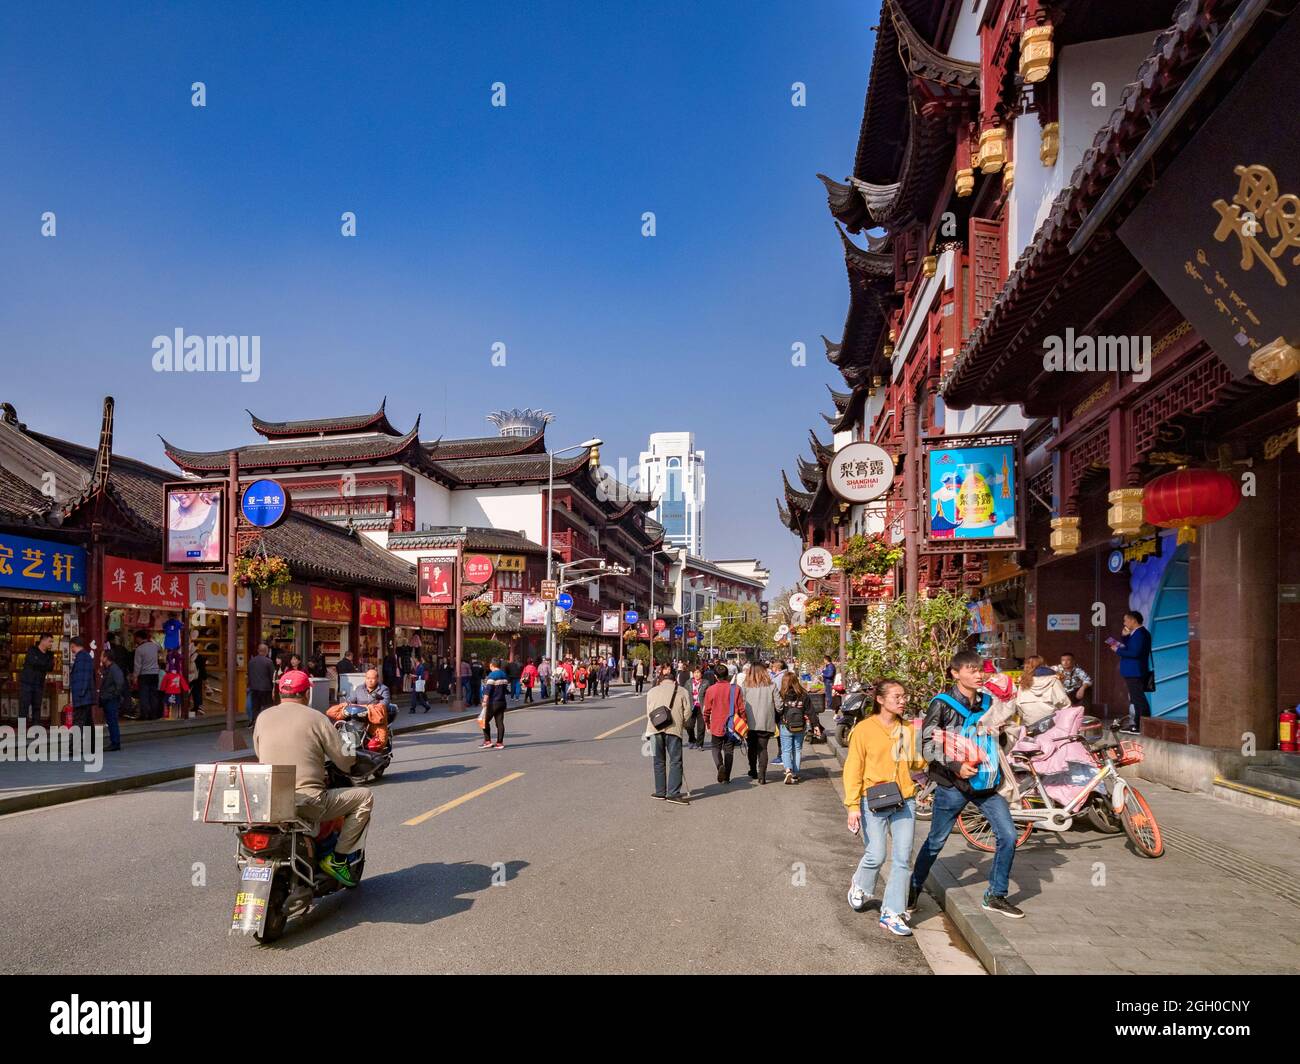 29 novembre 2018: Shopping nella trafficata Nanjing Road West, con folle di persone che godono della zona del patrimonio. Cielo blu chiaro. Foto Stock